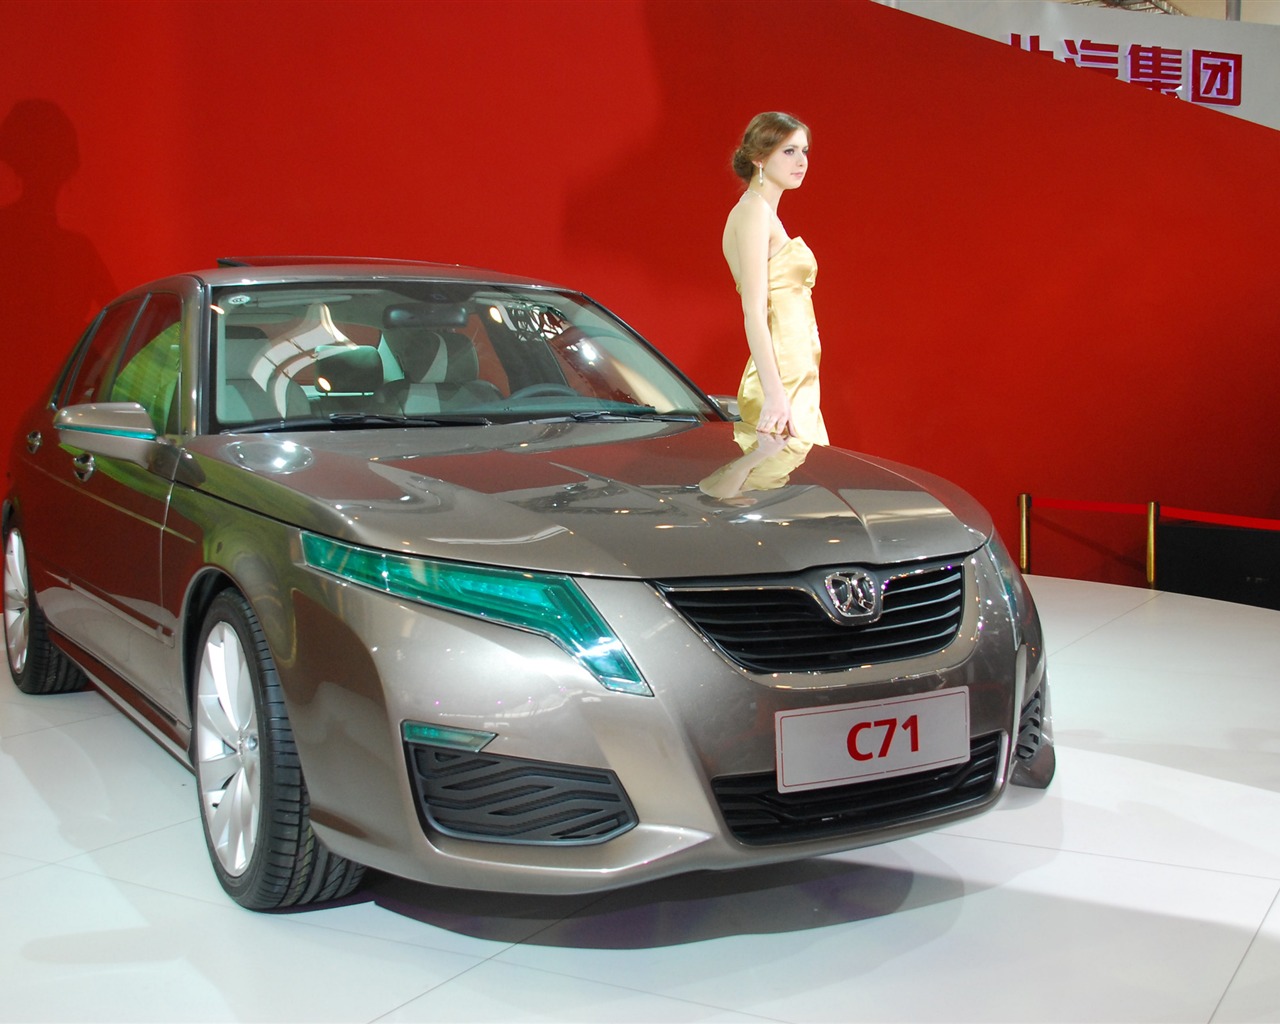 2010北京国际车展(一) (z321x123作品)14 - 1280x1024